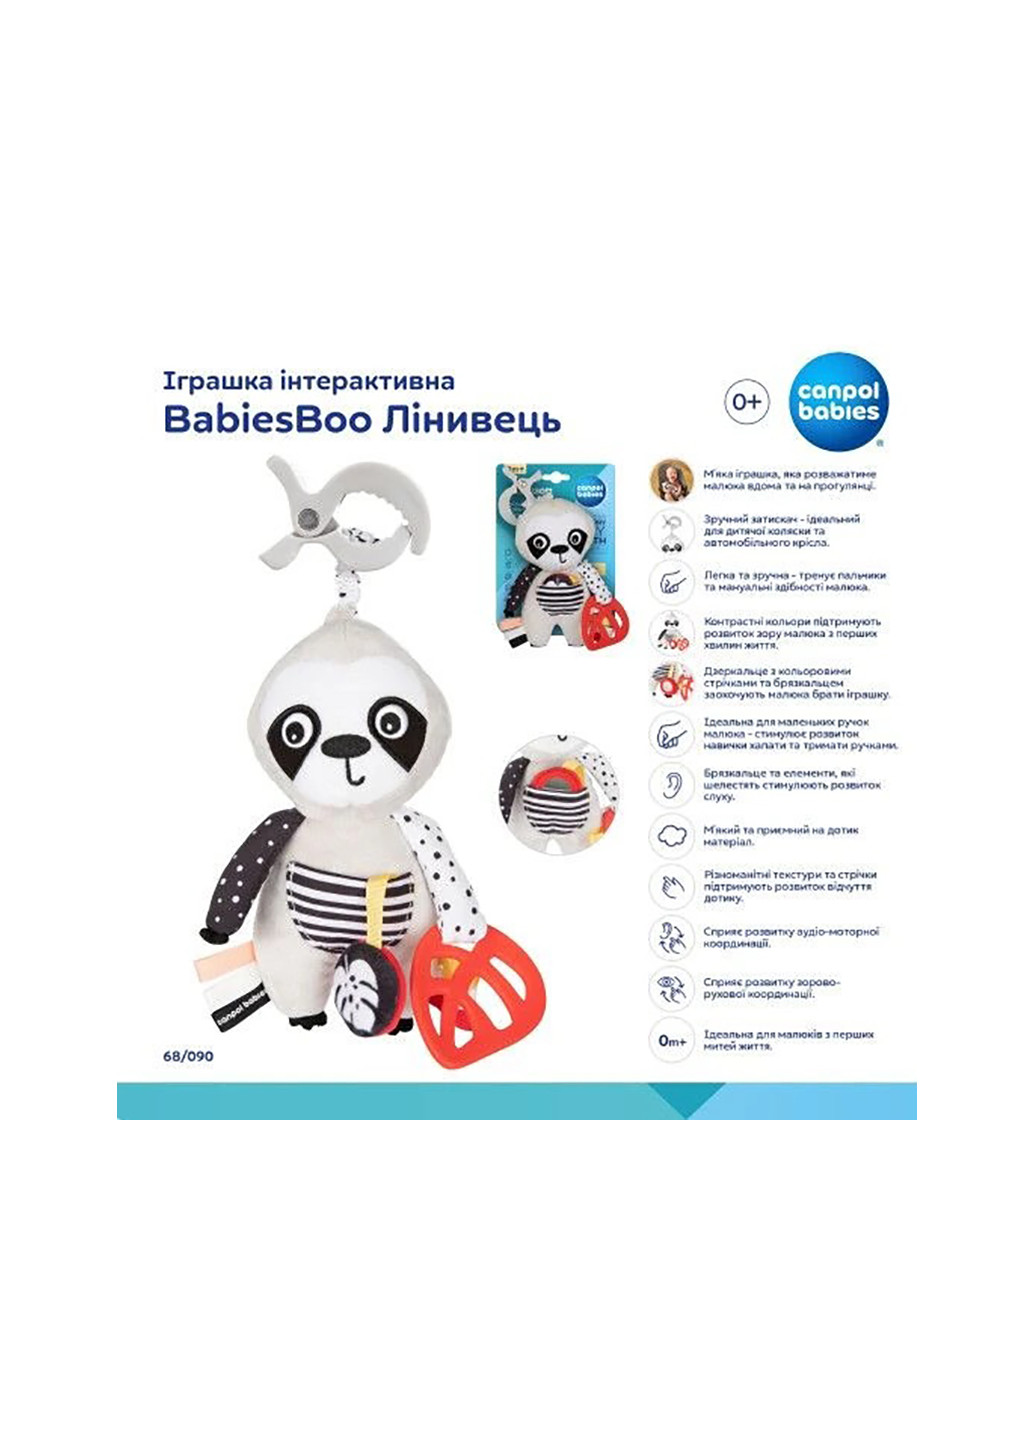 Іграшка інтерактивна BabiesBoo Лінивець 68/090 Canpol Babies (275082029)